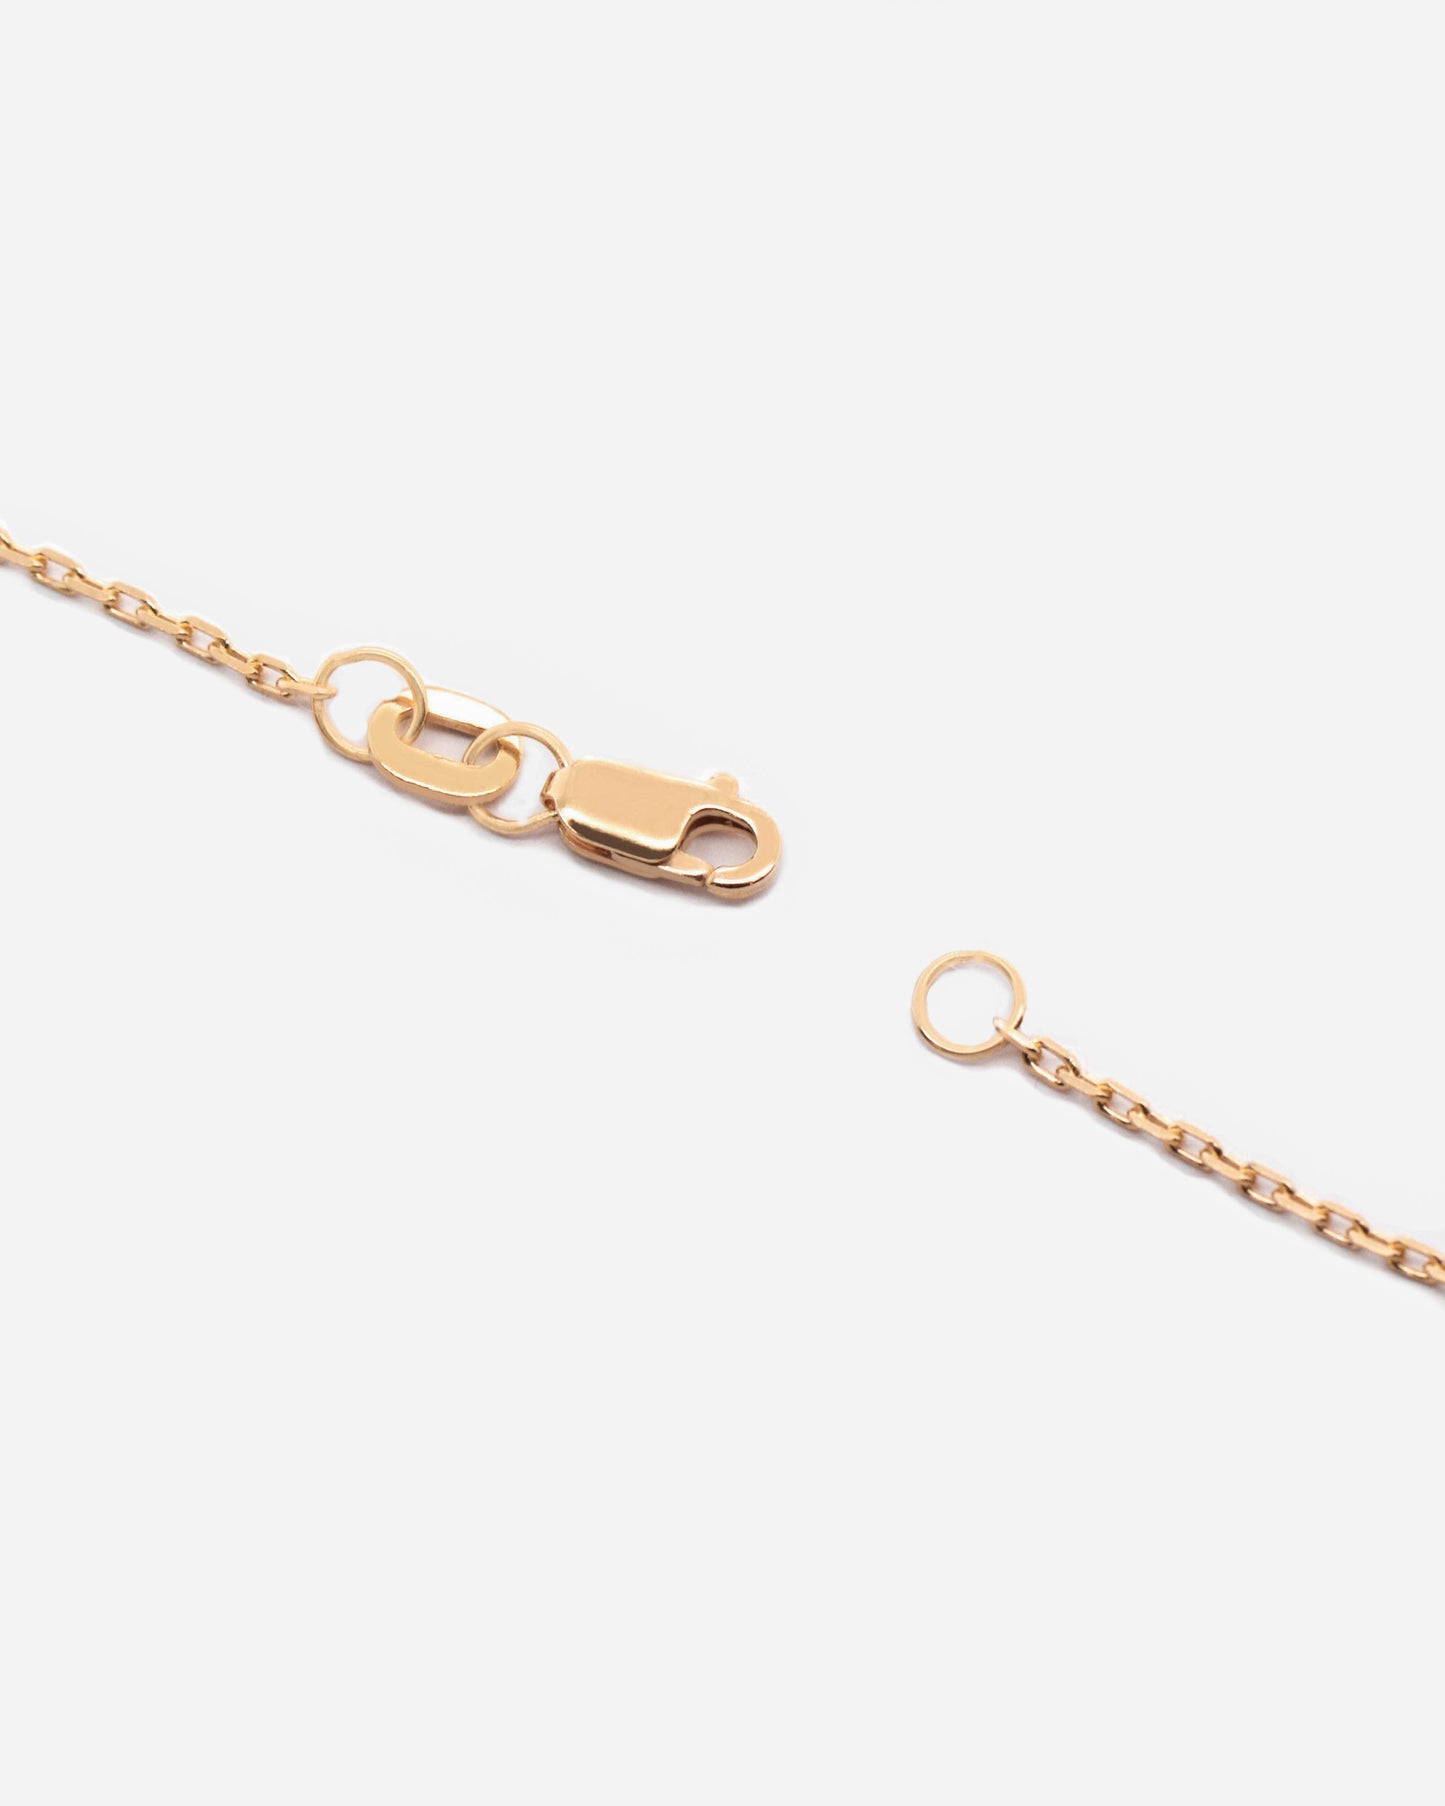 18K Vermeil Chain Necklace